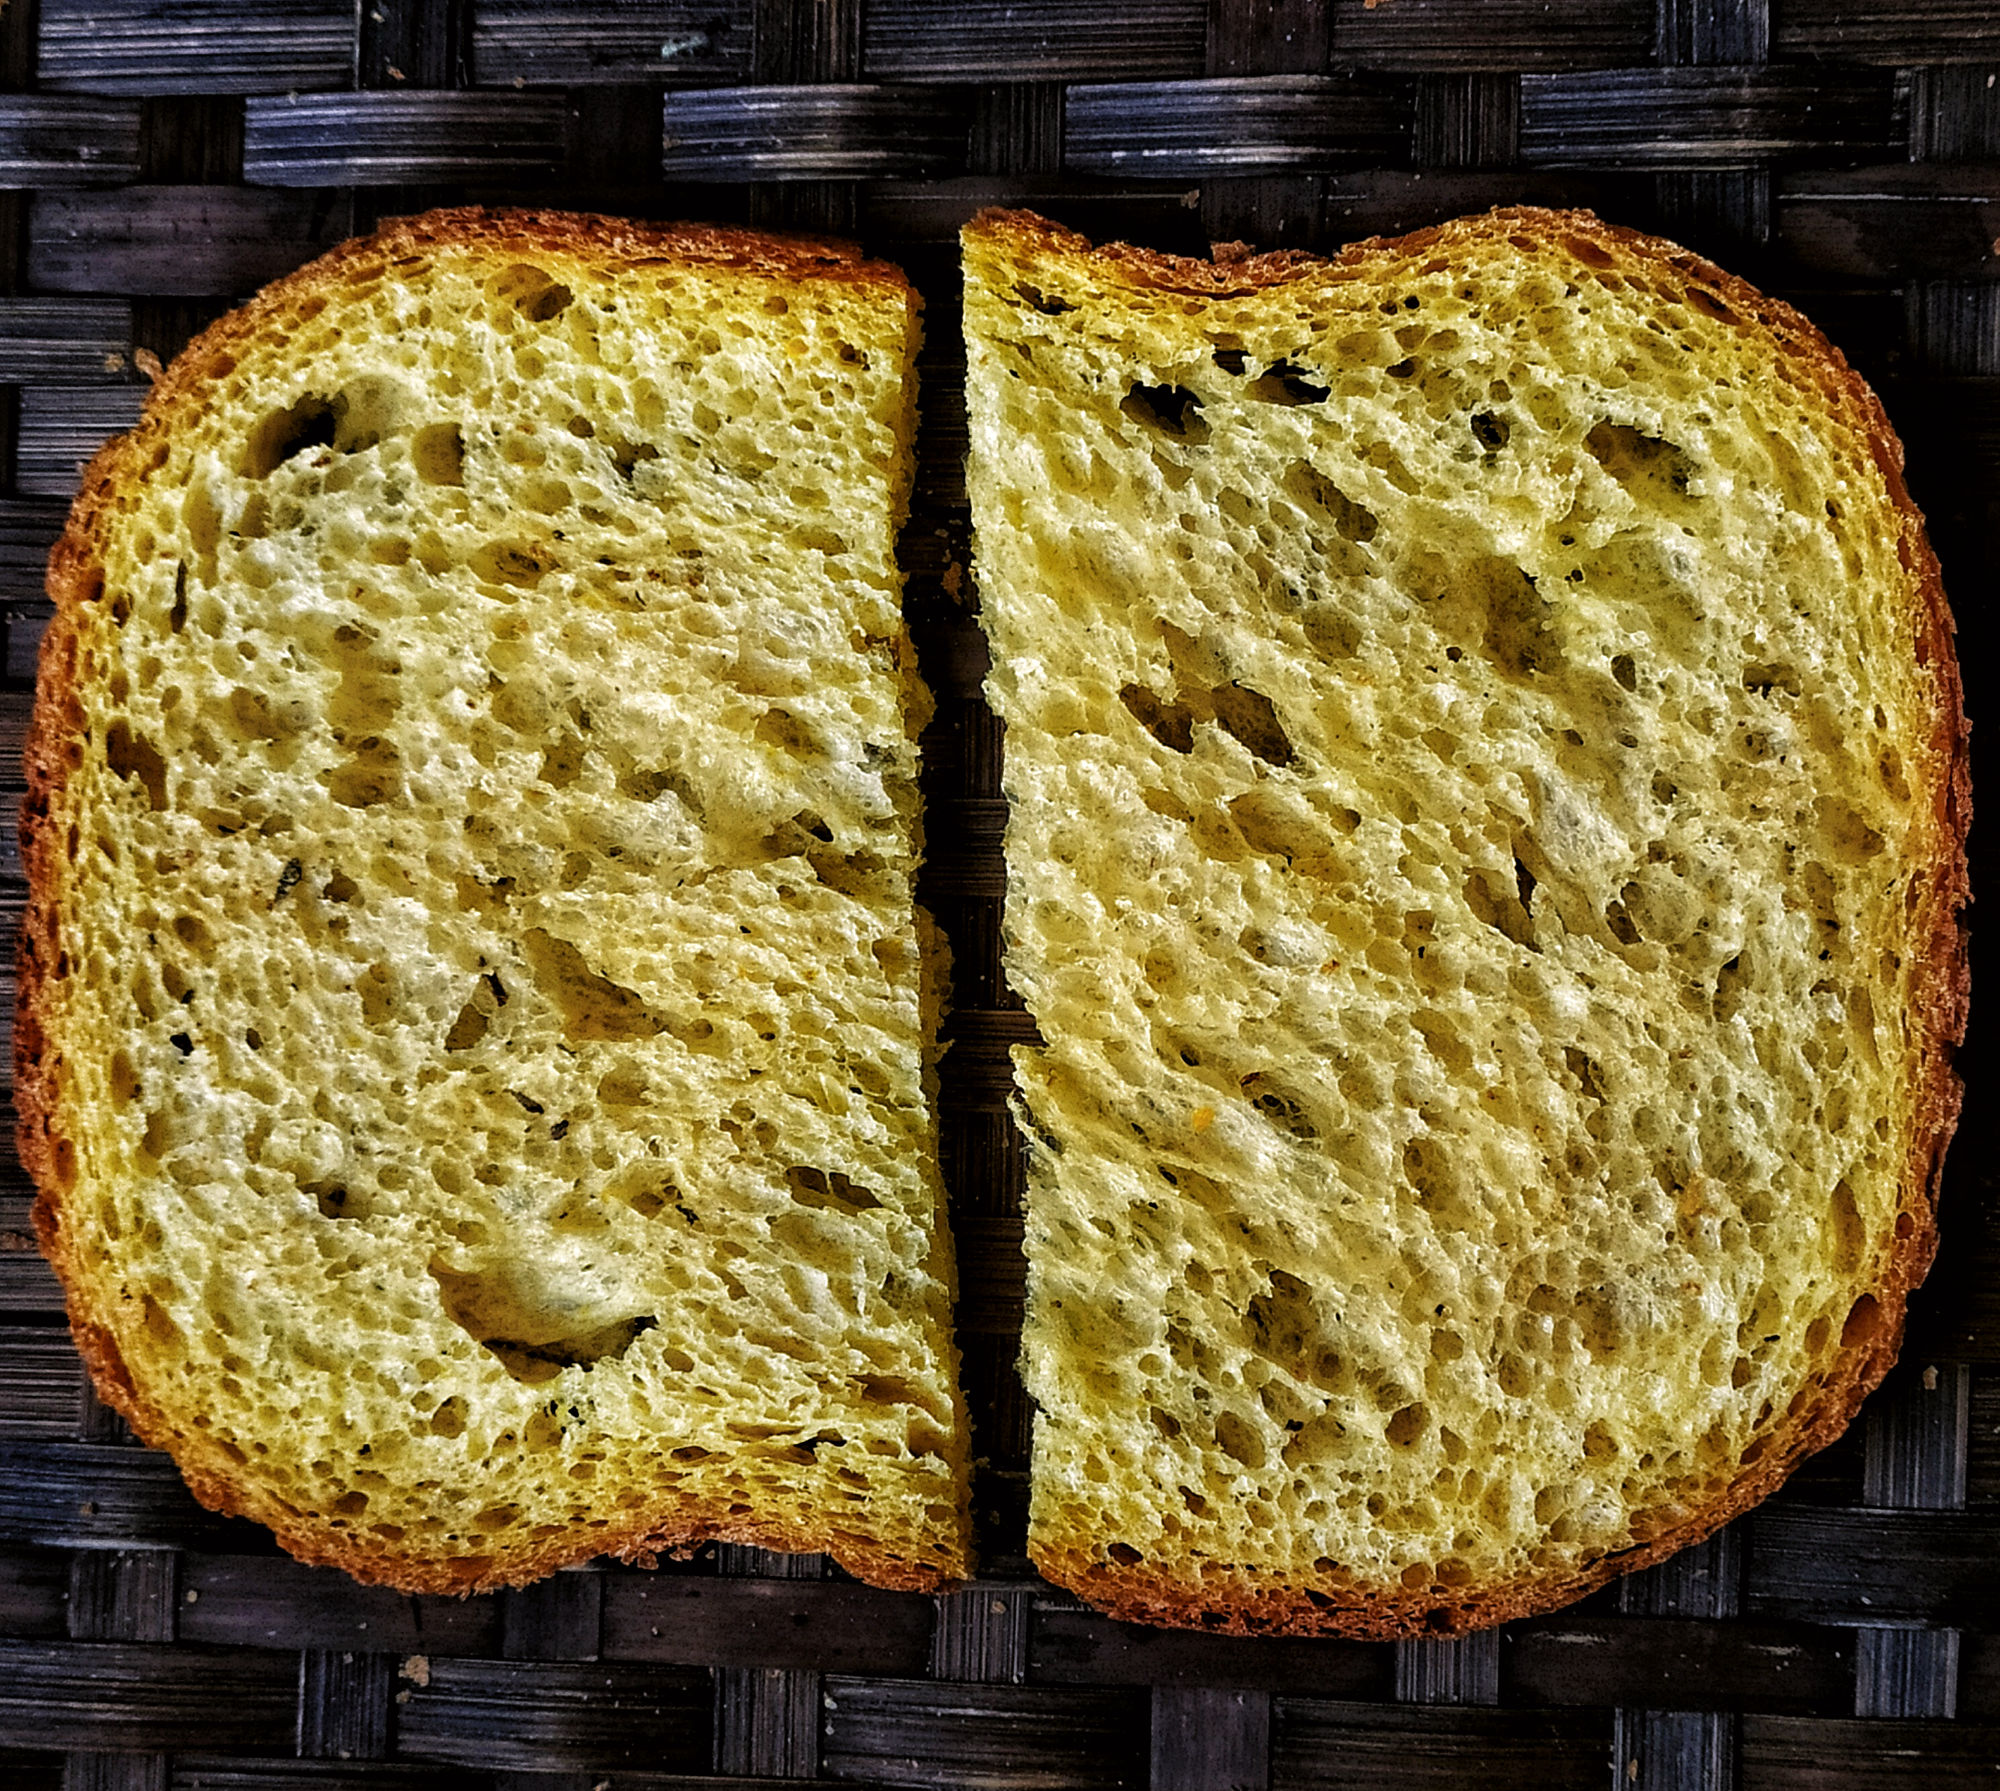 Постный хлеб. Тыквенный хлеб. Постный хлеб рецепт. Как выглядит постный хлеб. Постный хлеб рецепт в духовке домашних условиях